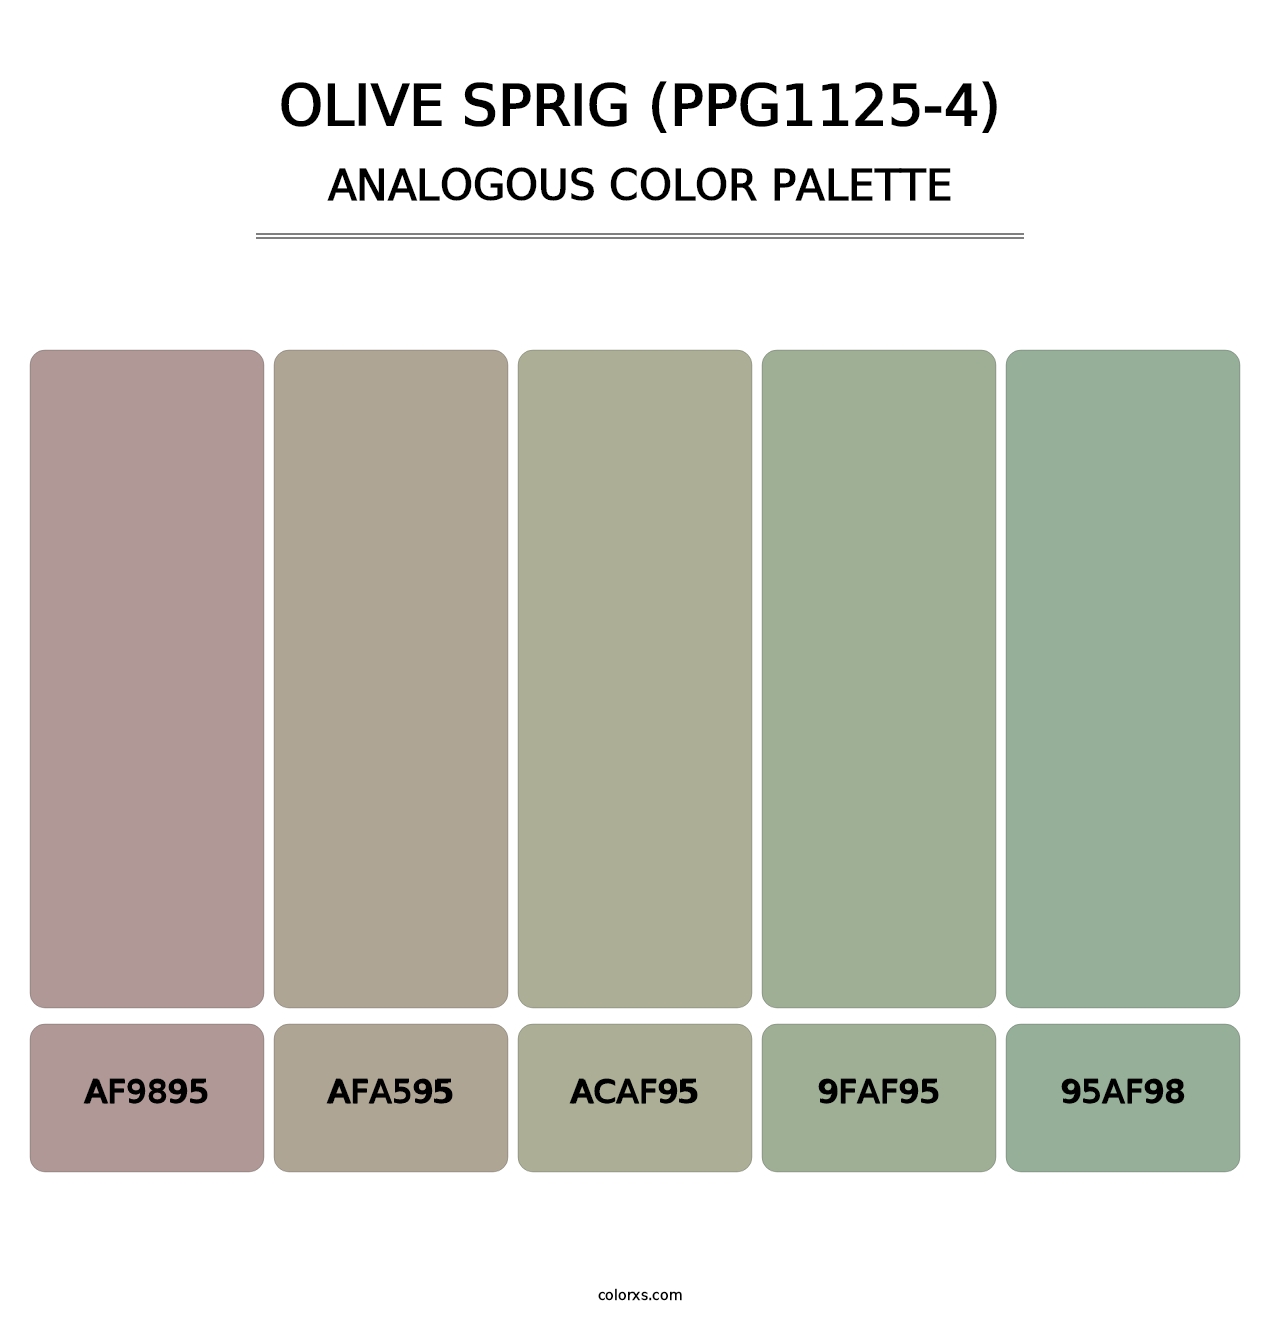 Olive Sprig (PPG1125-4) - Analogous Color Palette